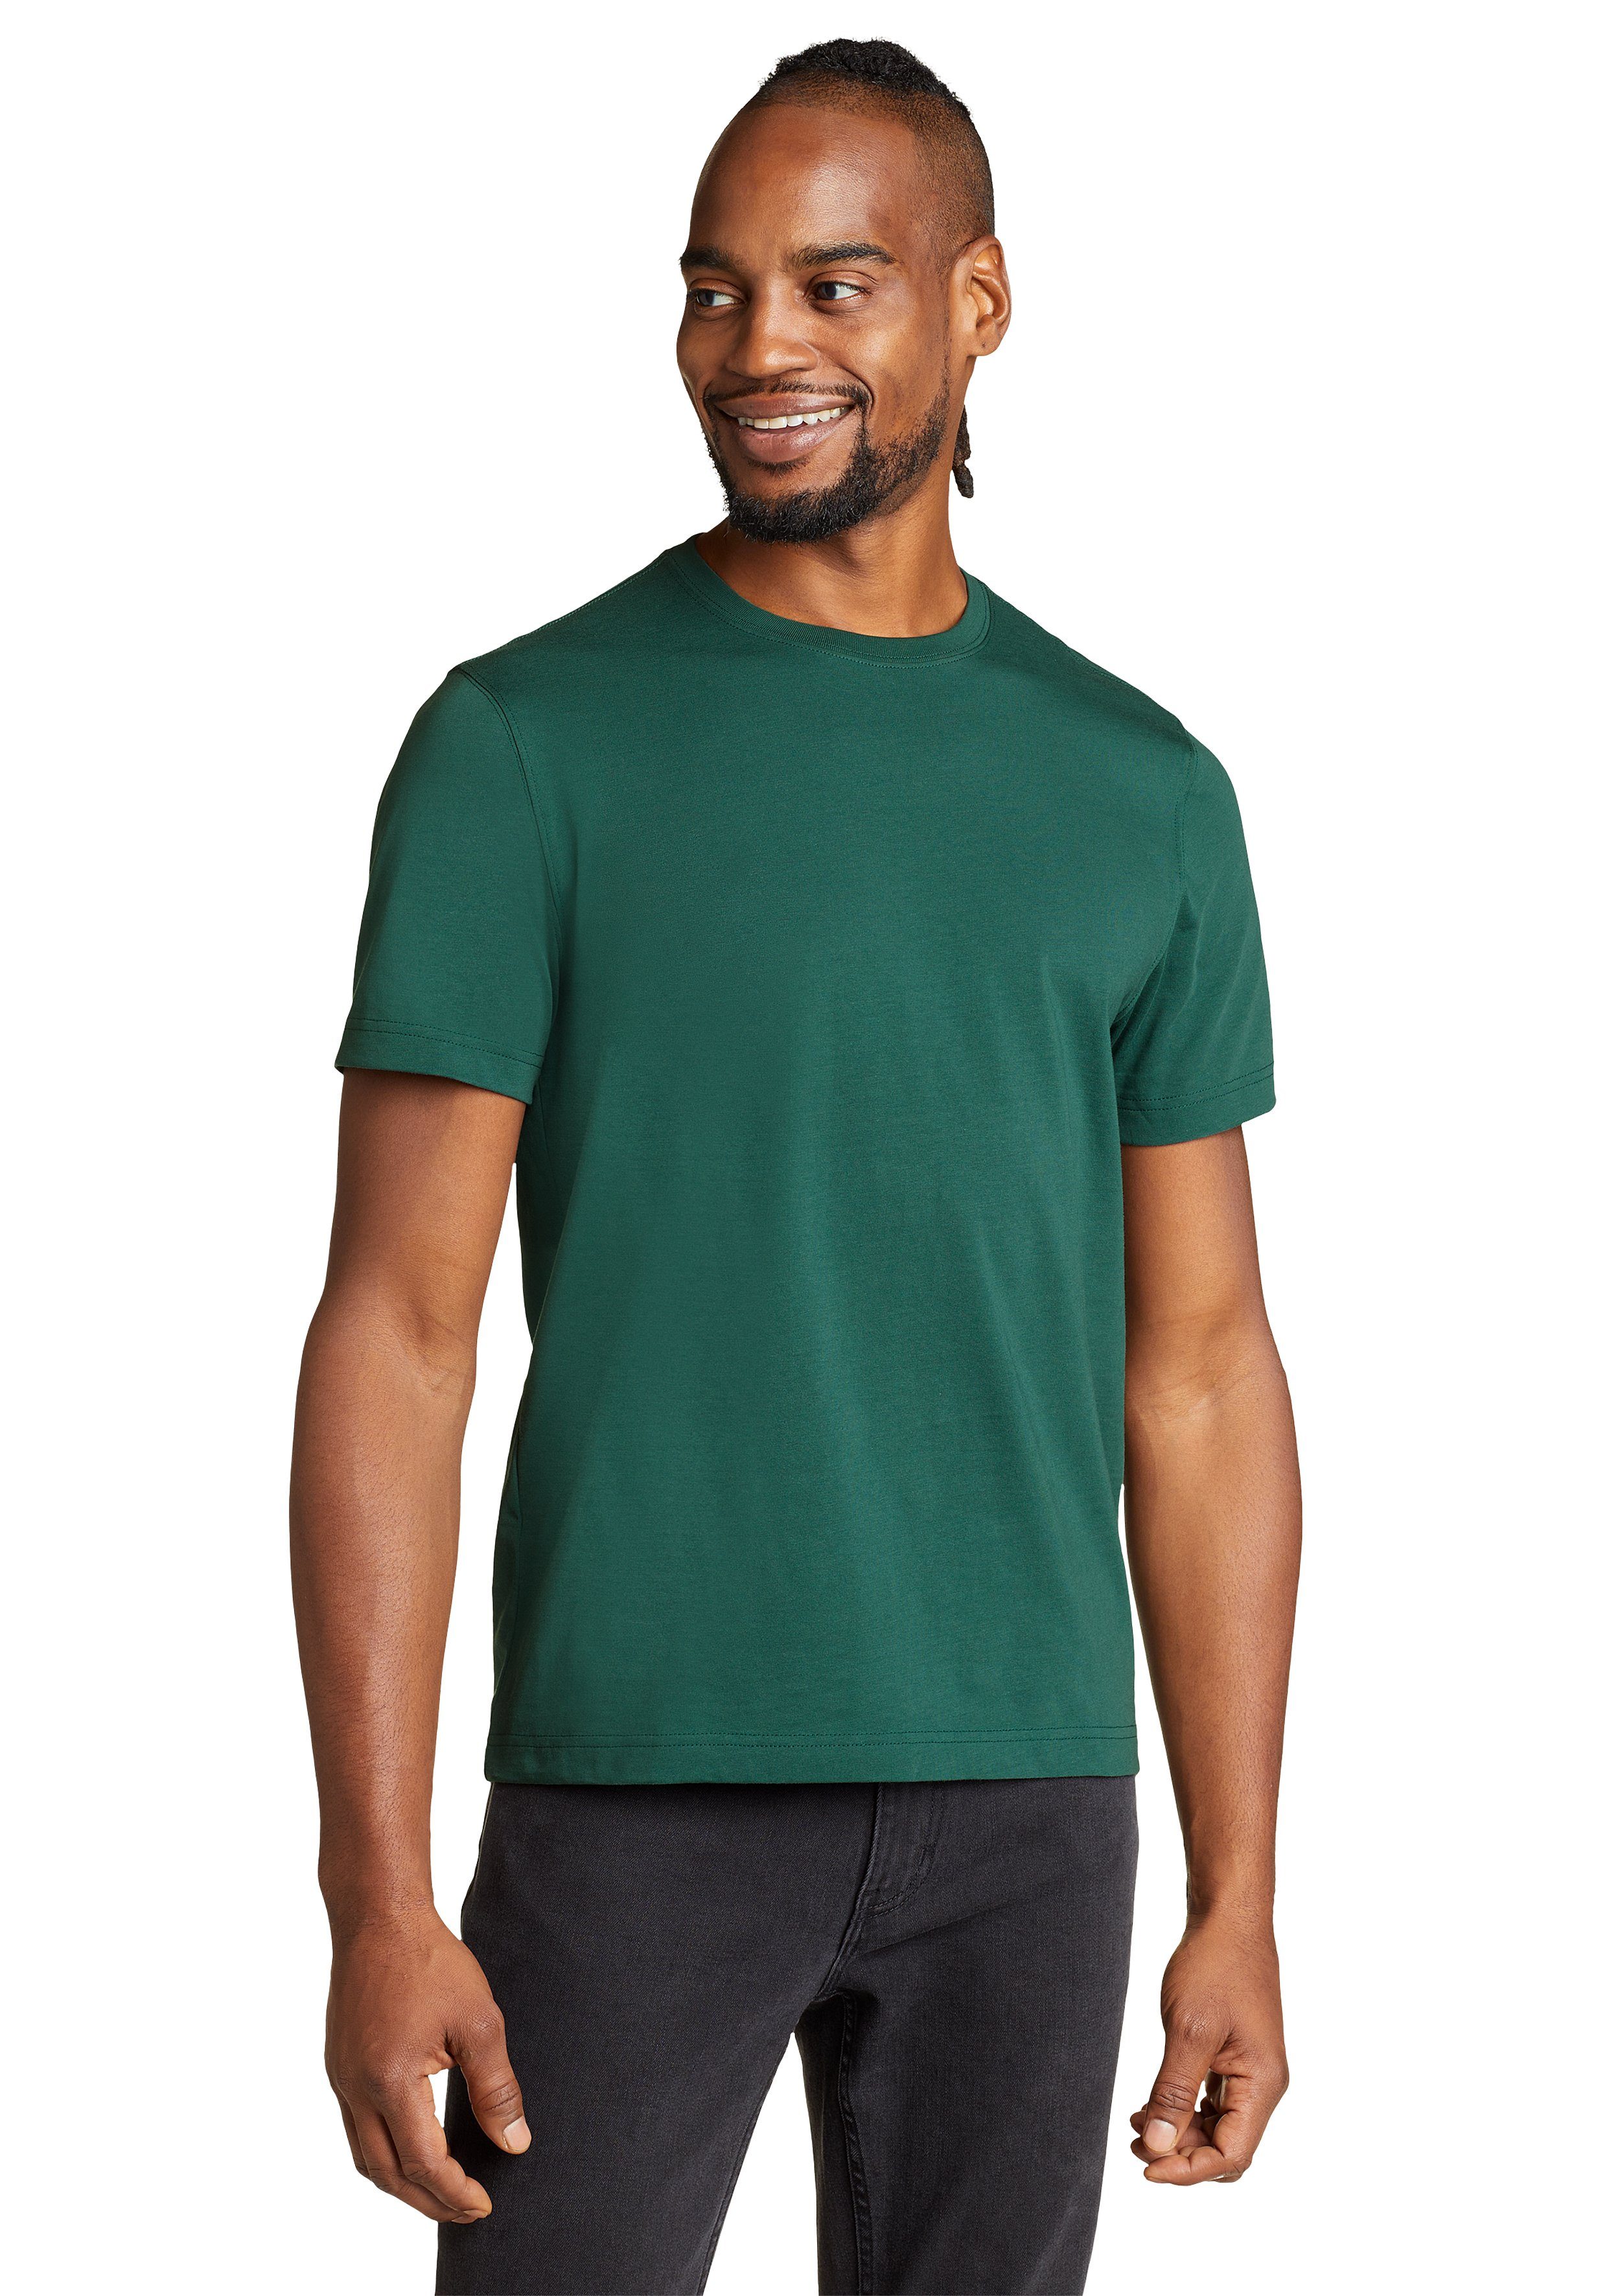 Eddie Bauer - Baumwolle fit 100% - T-Shirt Wash Immergrün Shirt Dunkles Legend Slim